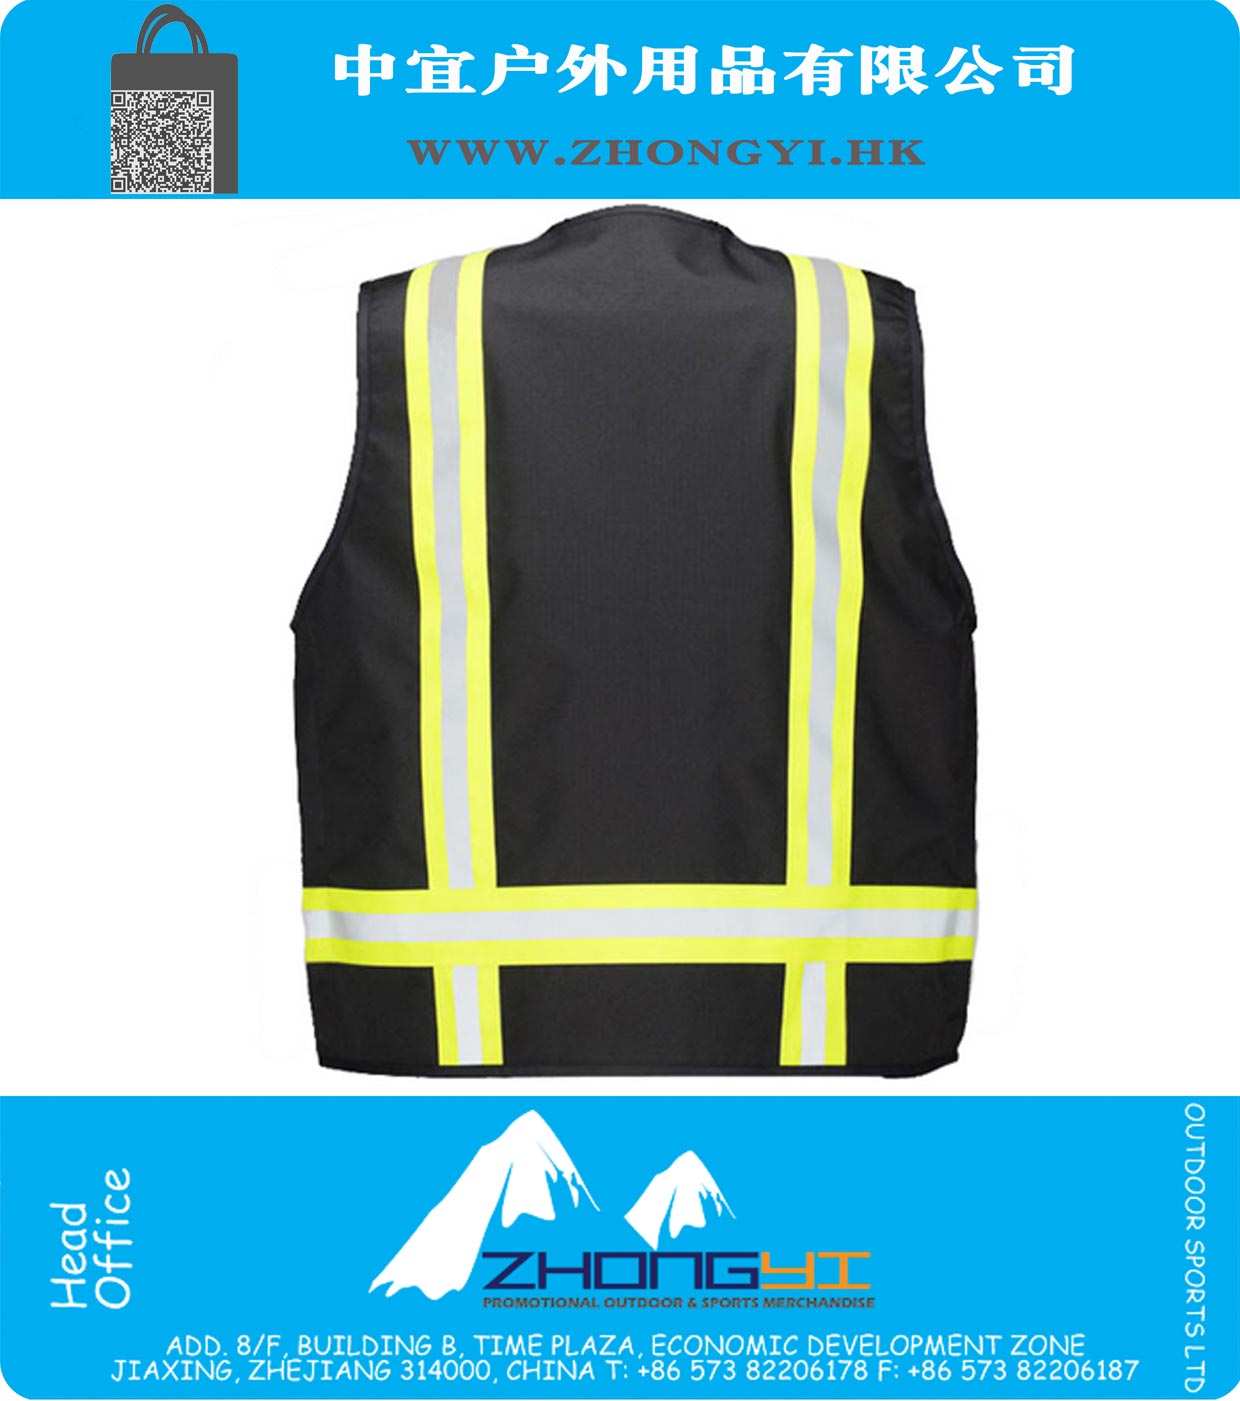 FR Vest black vest workwear work vest